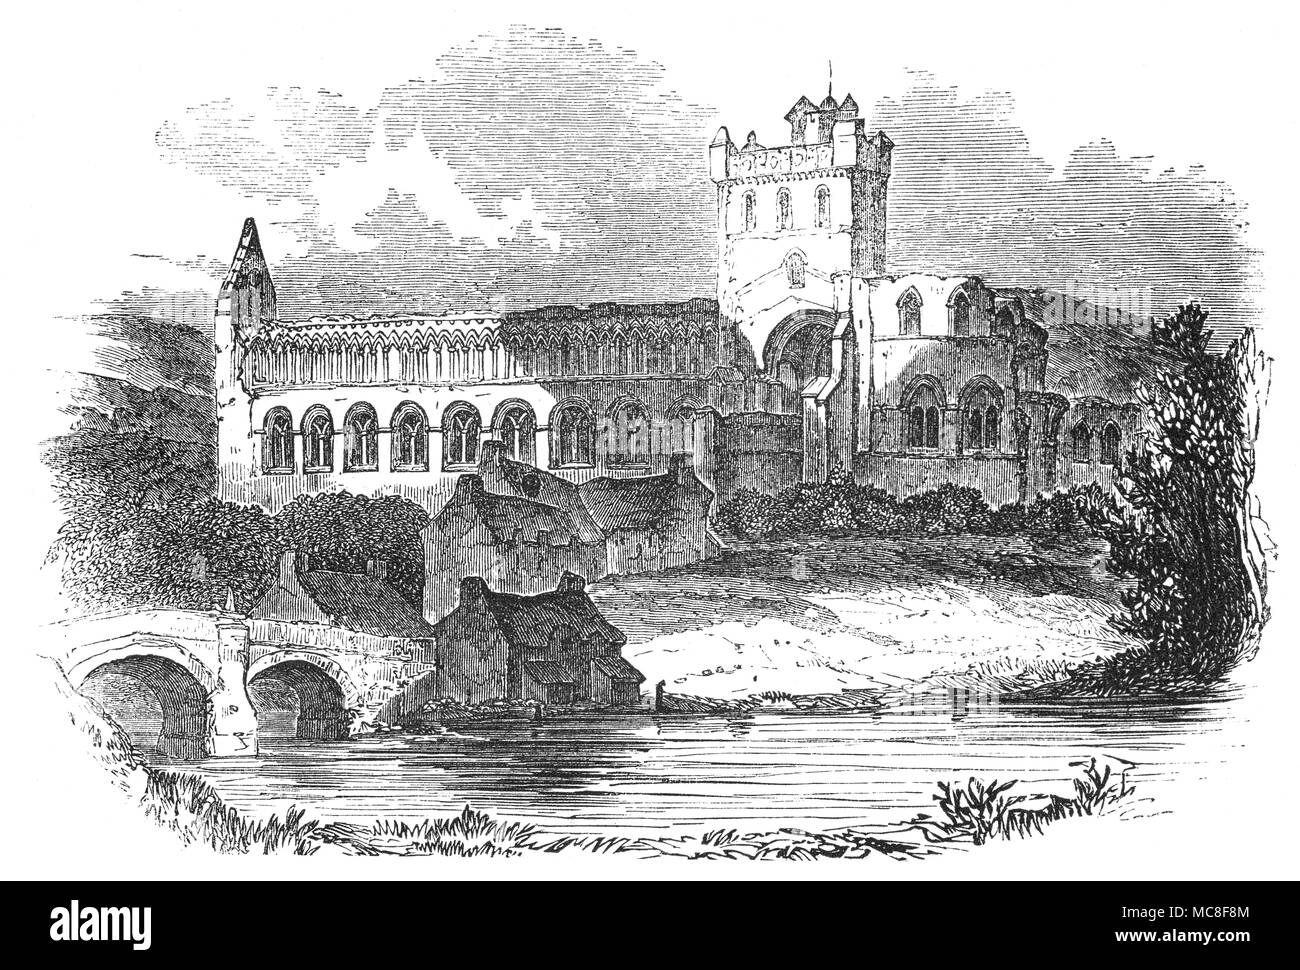 Jedburgh Abbey, una rovina Abbazia Agostiniana fondata nel XII secolo, sul Jed acqua, un fiume e un affluente del fiume Teviot. L'Abbazia è situato a Jedburgh, in confini scozzesi a nord del confine con l'Inghilterra. Nel 1118, il re Davide ha istituito una fondazione dei canonici regolari dell'Ordine di sant'Agostino, cosa è ora Jedburgh. La fondazione sembrava avere lo status di 'priory' nei primi anni e successivamente è stato elevato al rango di un monastero prima di diventare nel 1147, una vera e propria abbazia dedicata alla Vergine Maria. Foto Stock